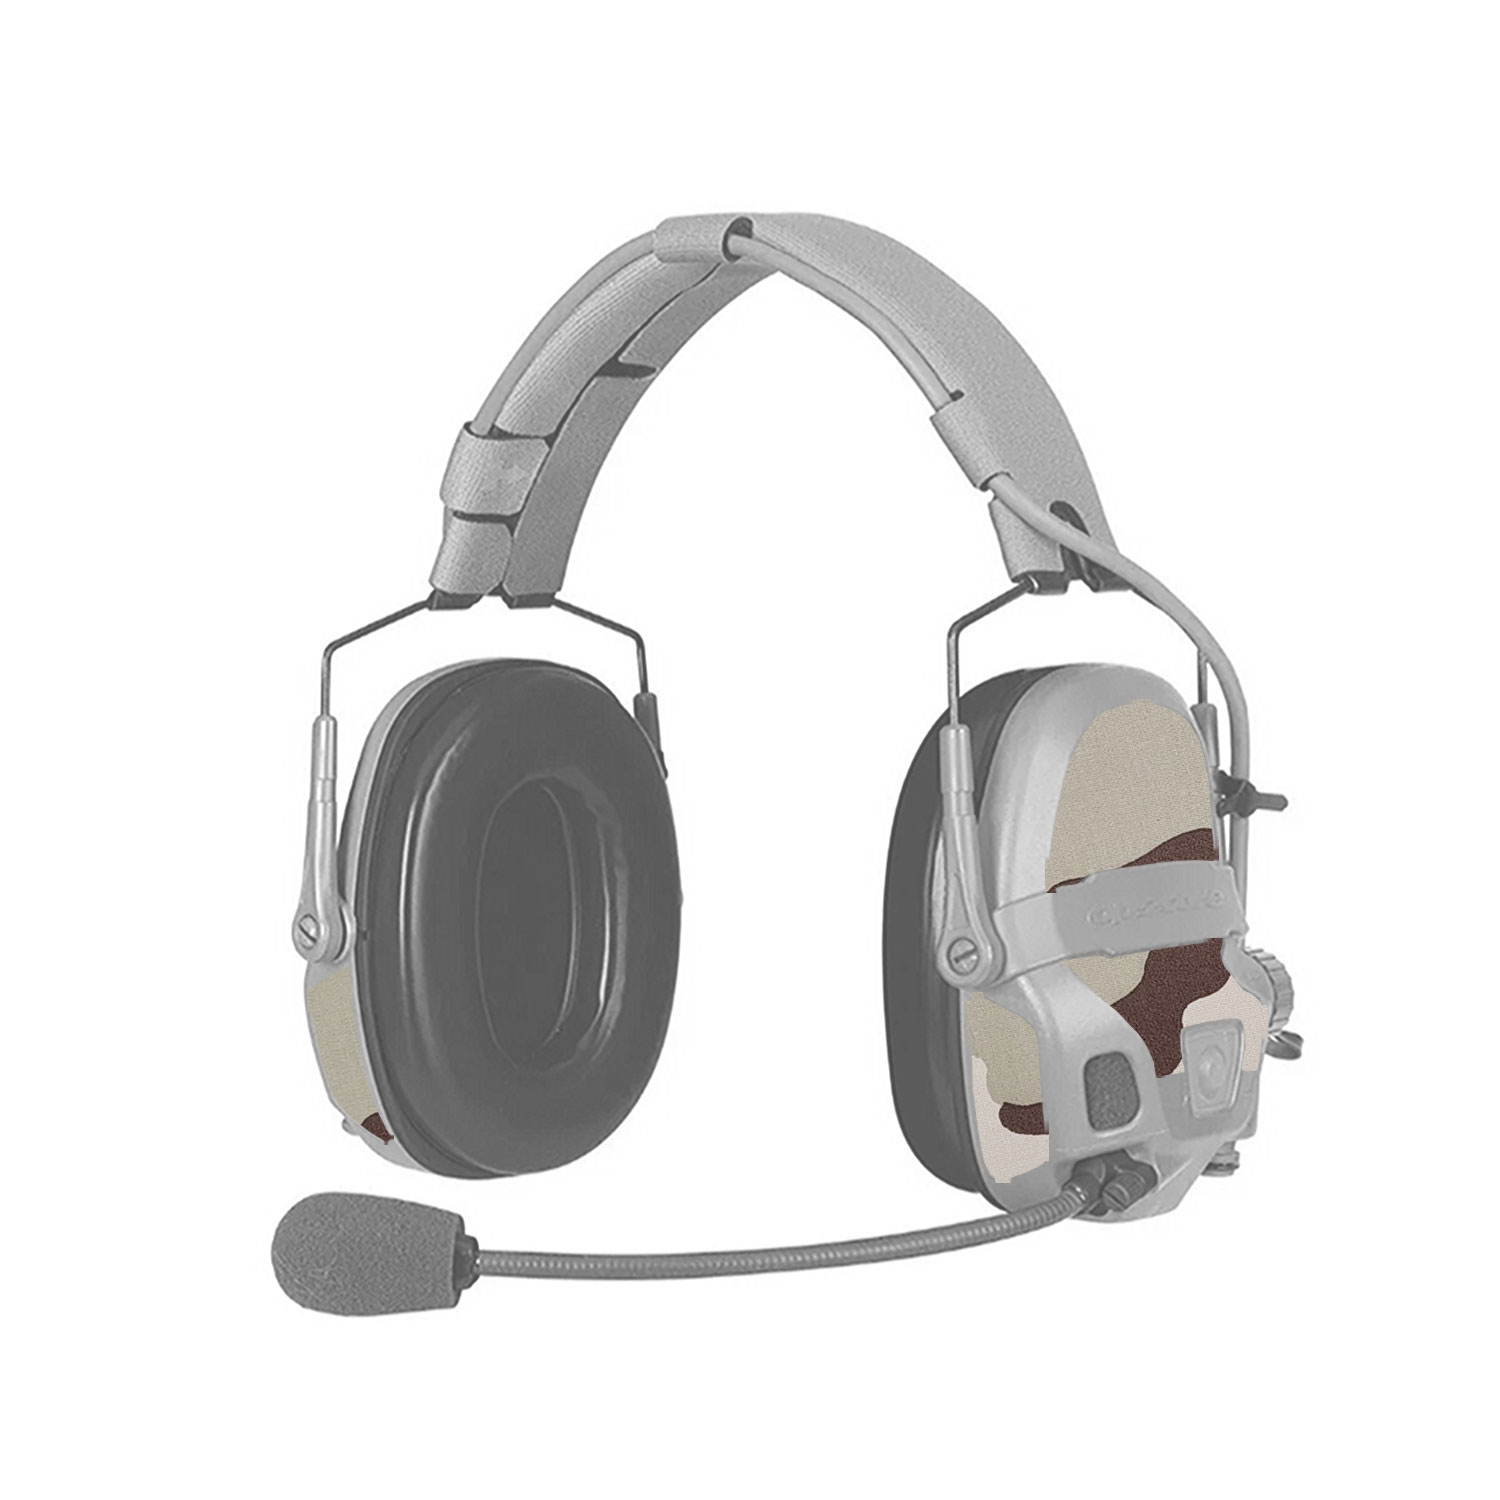 amp-headset-desert-3-color-2